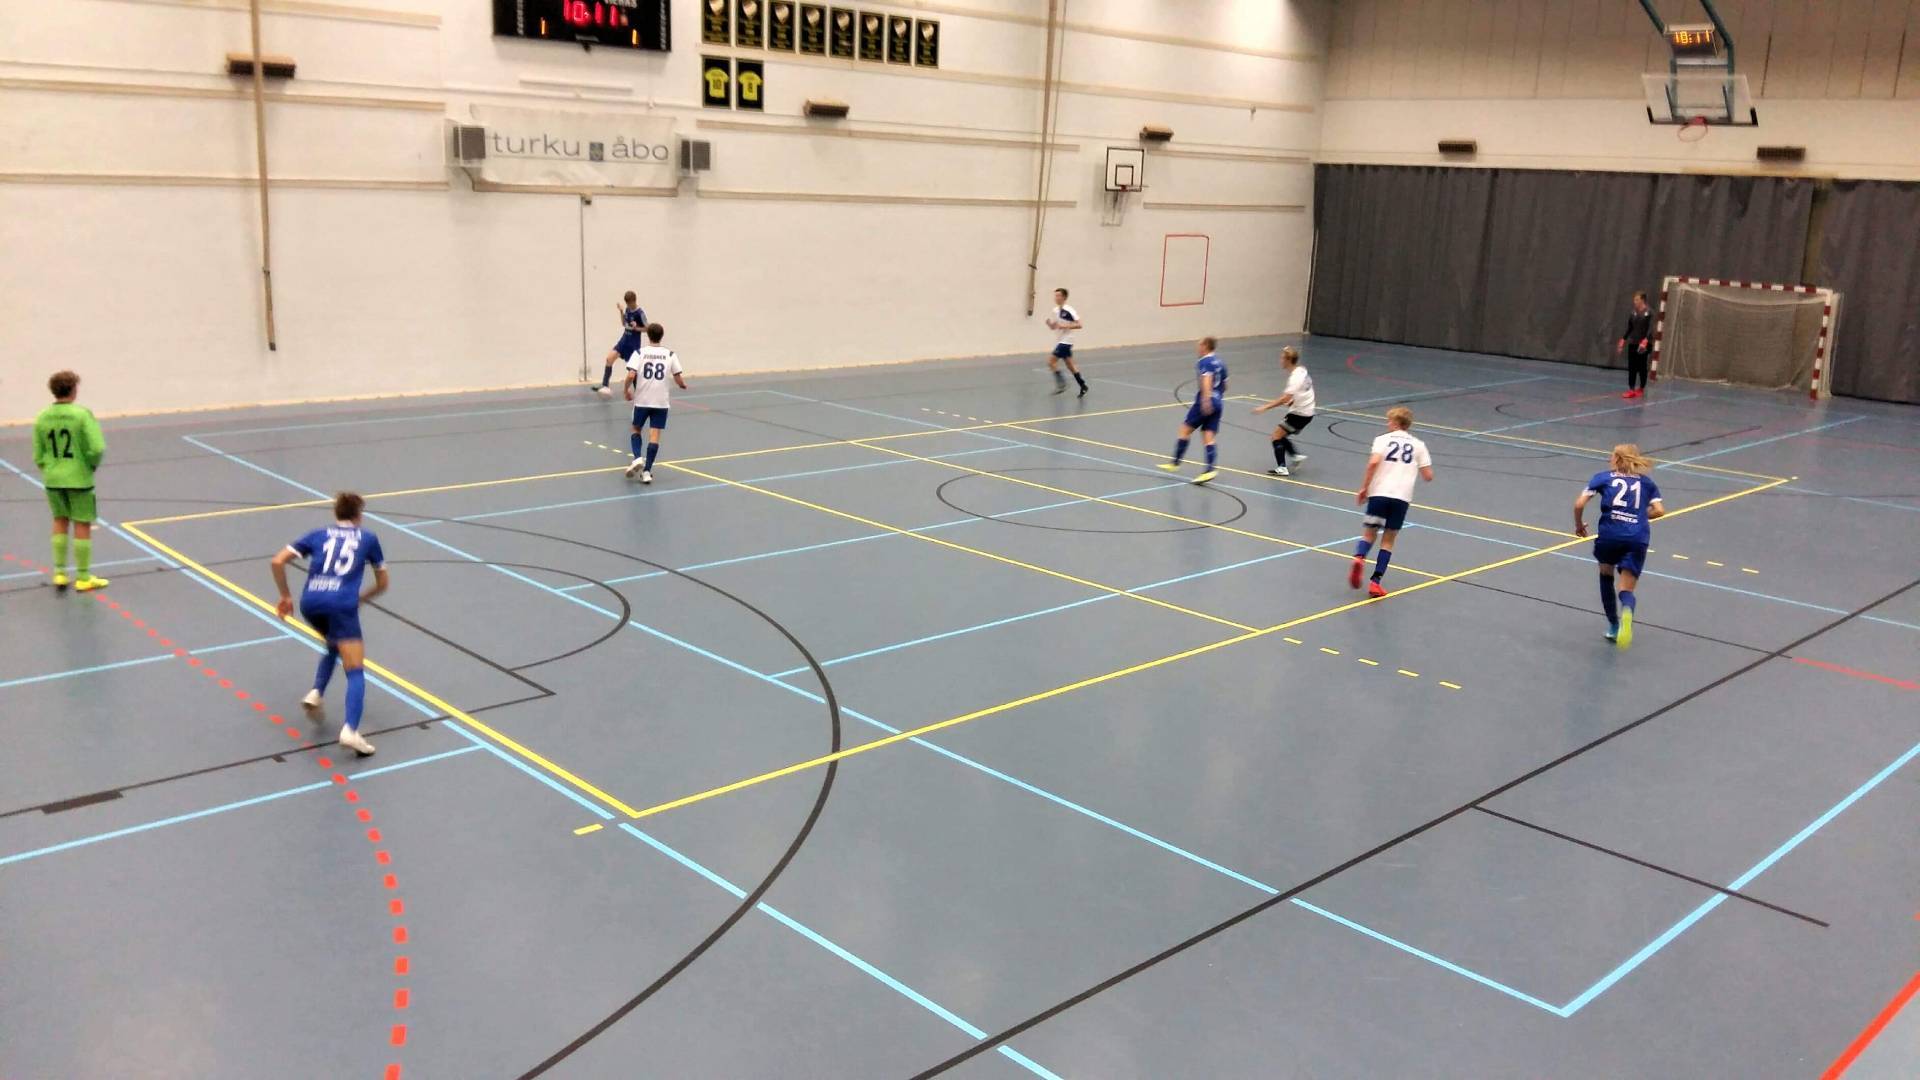 Futsalharjoitusturnaus 26.10.2019